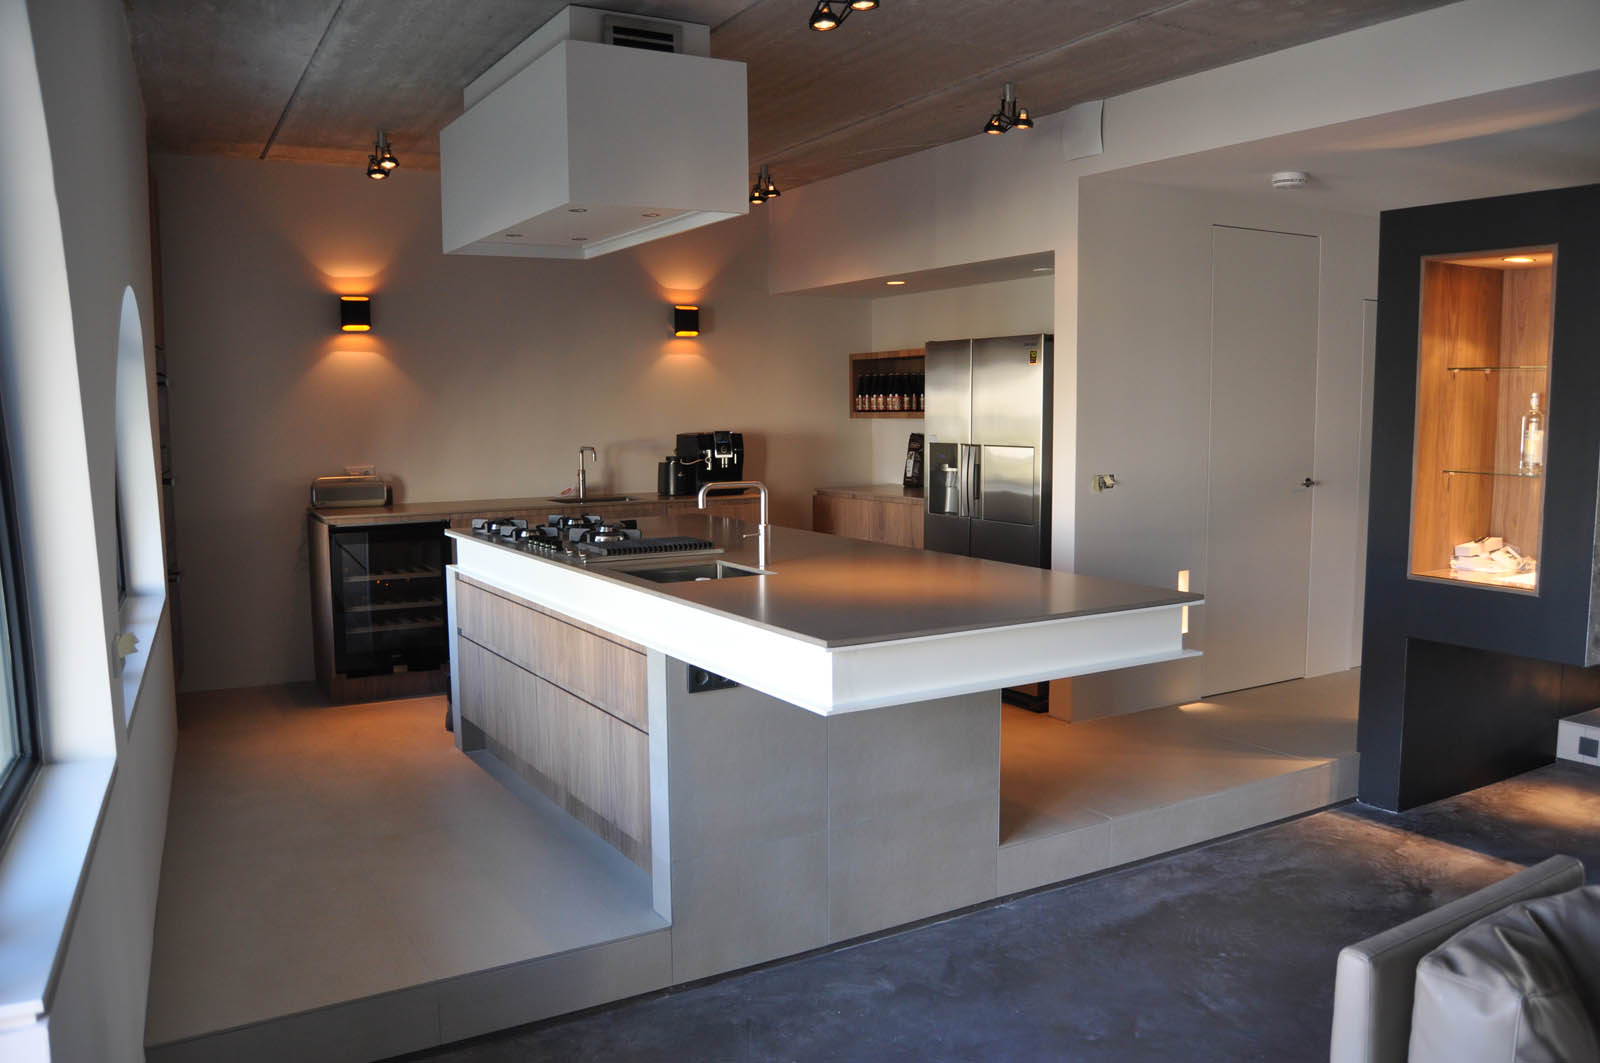 Kitchen, Loft Alkmaar, by Jeroen de Nijs